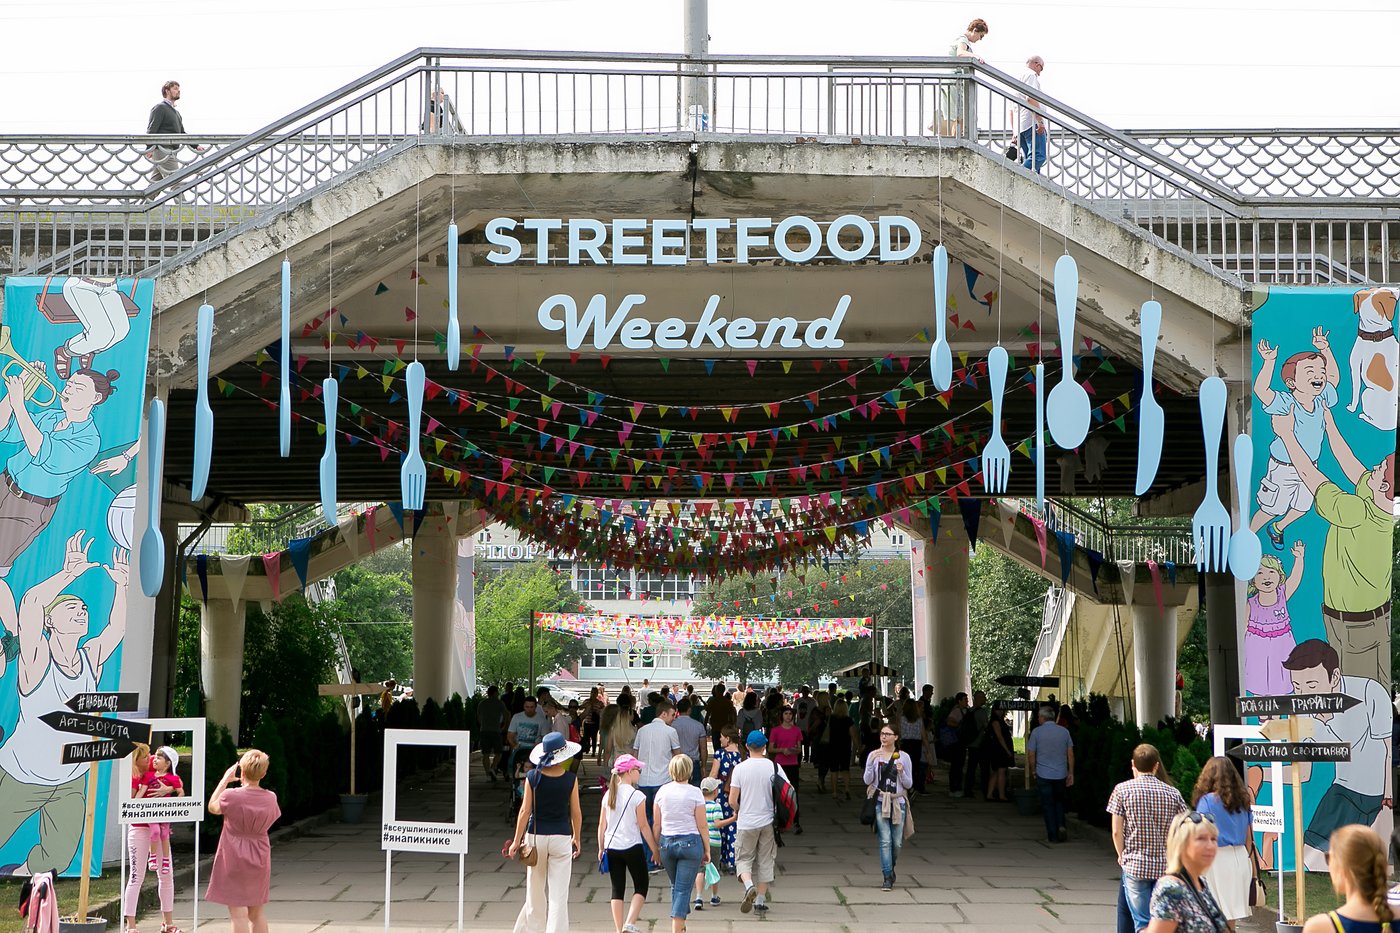 Вдохновлённые одним из самых важных городских событий этого лета, мы нашли 5 веских причин любить Street Food Weekend. 